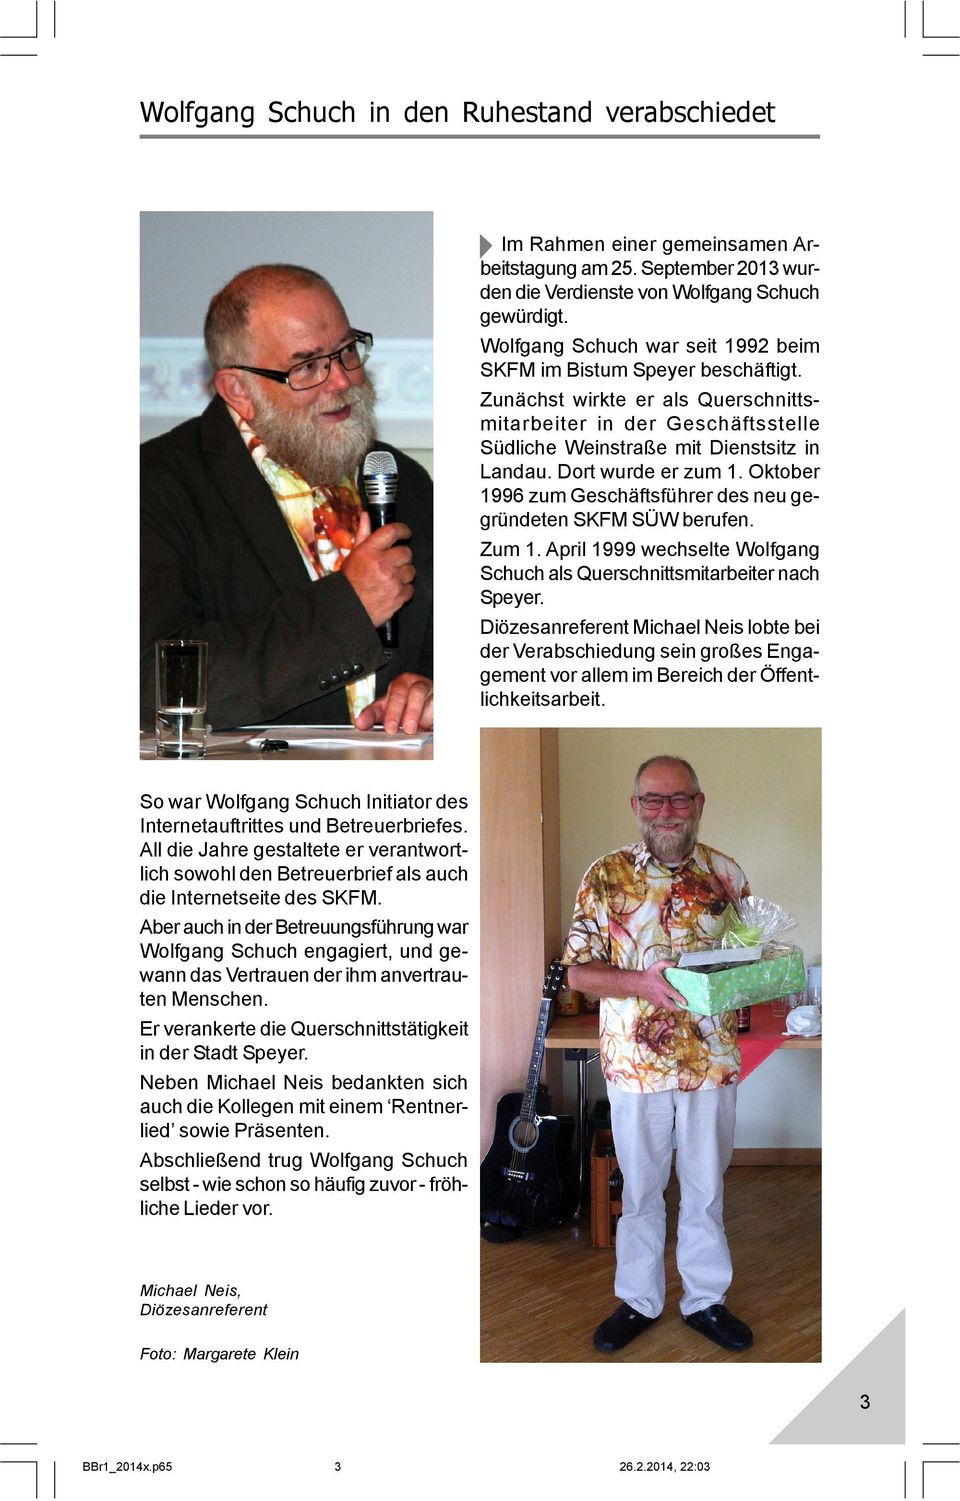 Dort wurde er zum 1. Oktober 1996 zum Geschäftsführer des neu gegründeten SKFM SÜW berufen. Zum 1. April 1999 wechselte Wolfgang Schuch als Querschnittsmitarbeiter nach Speyer.